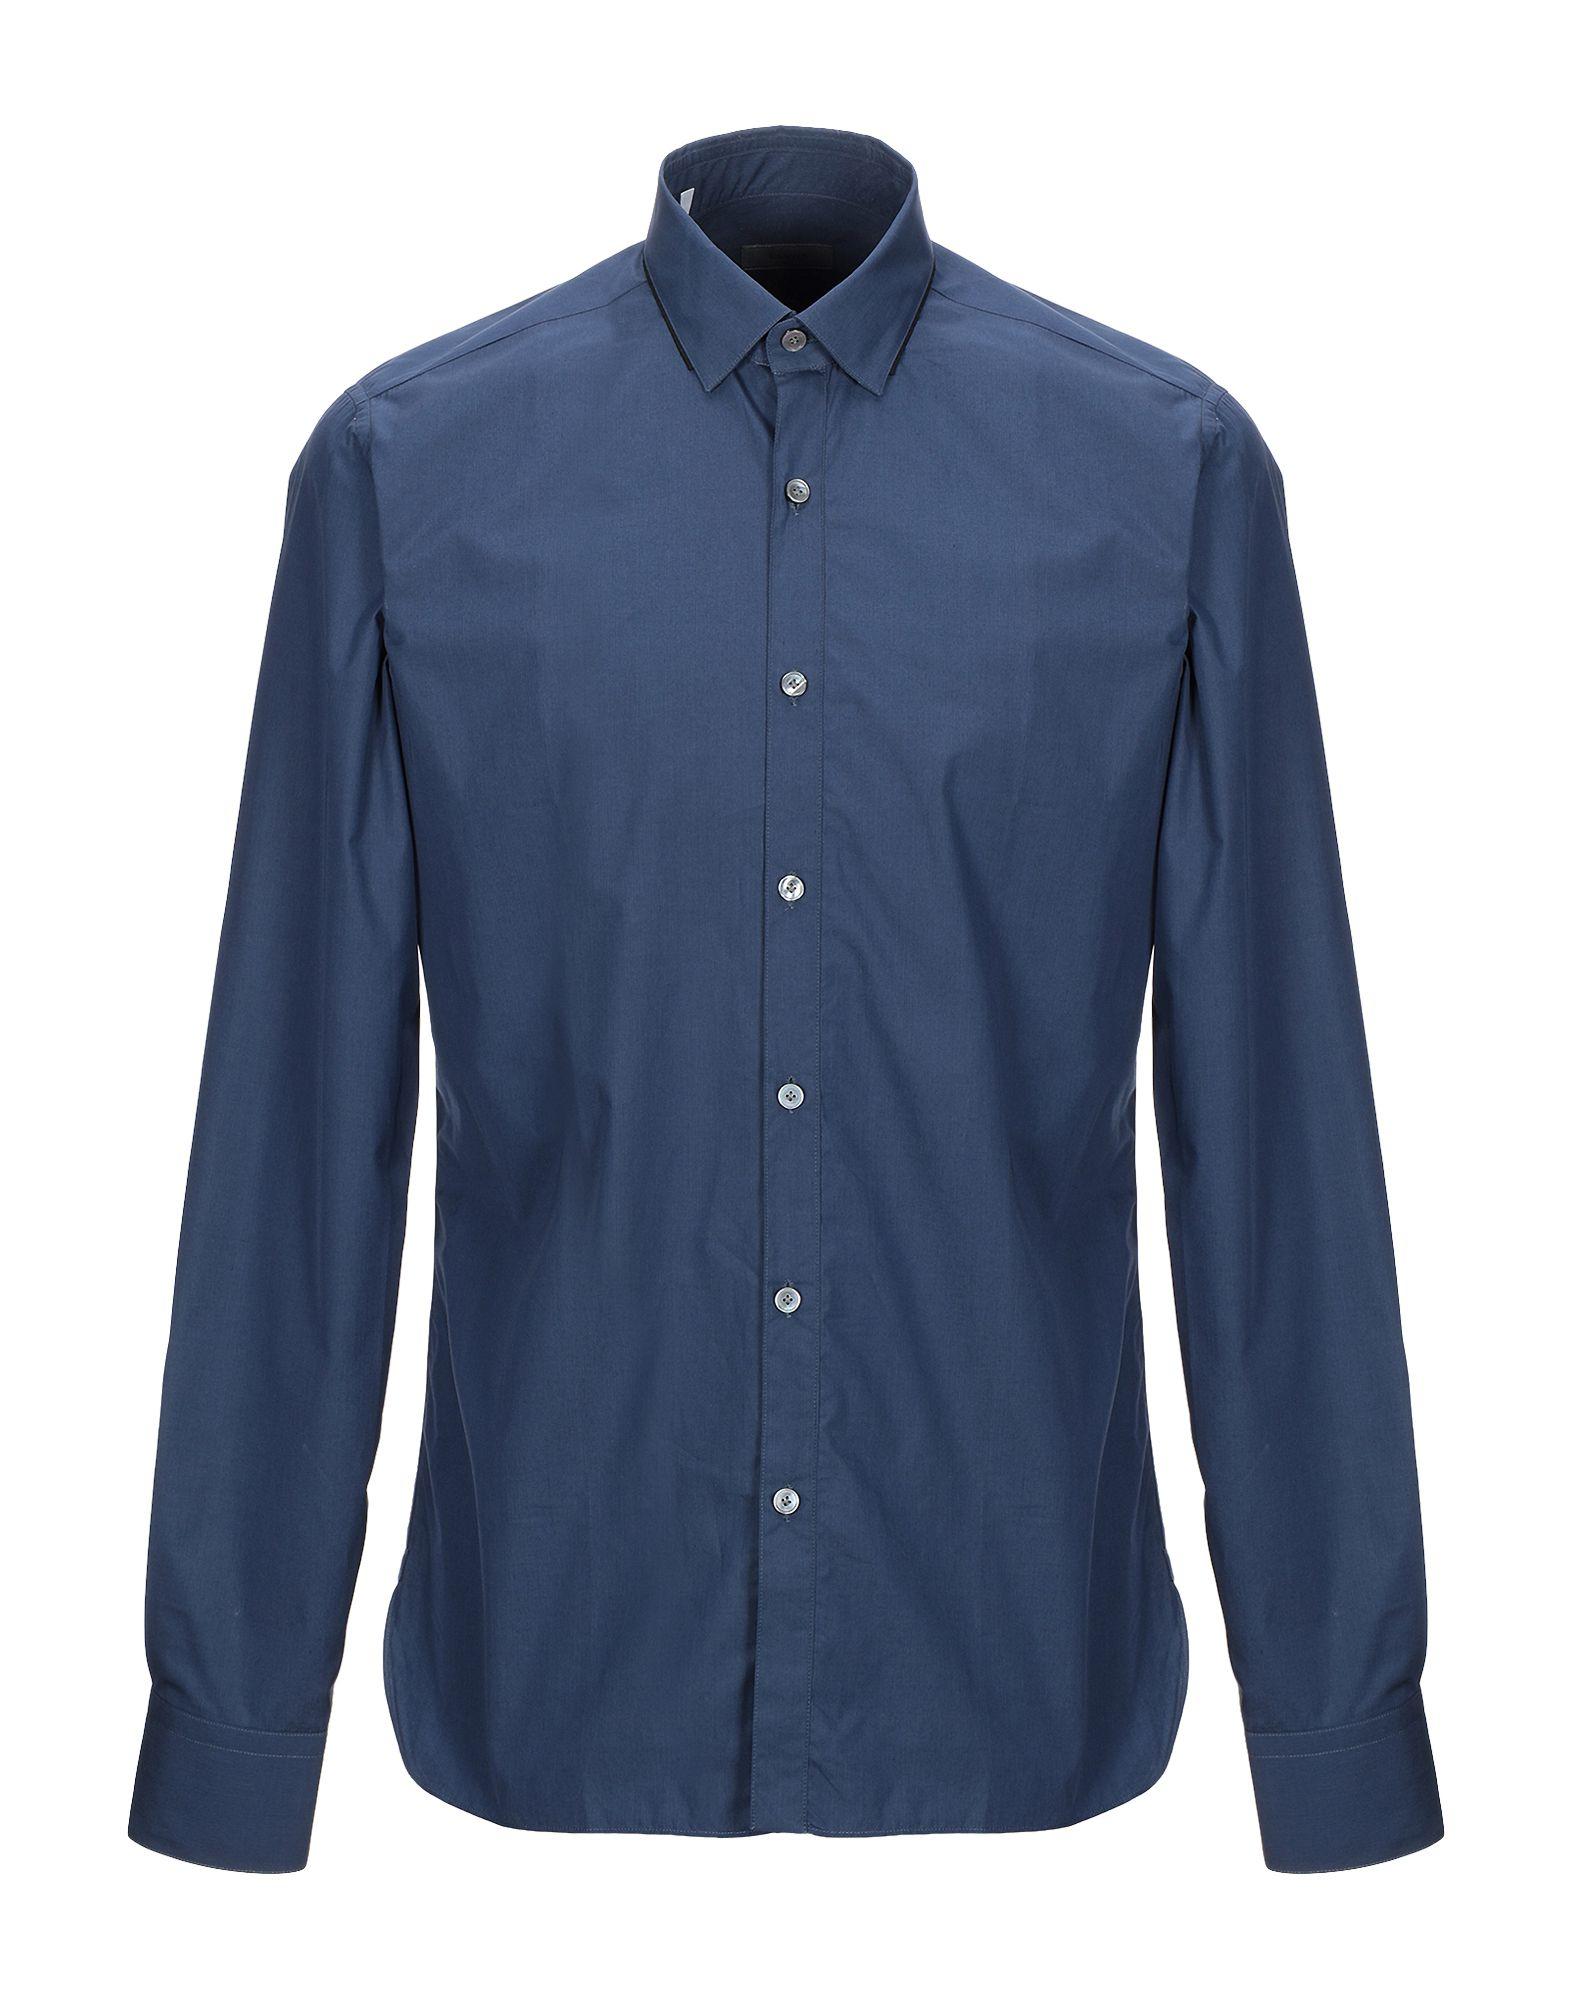 Lanvin Cotton Shirt in Dark Blue (Blue) for Men - Lyst